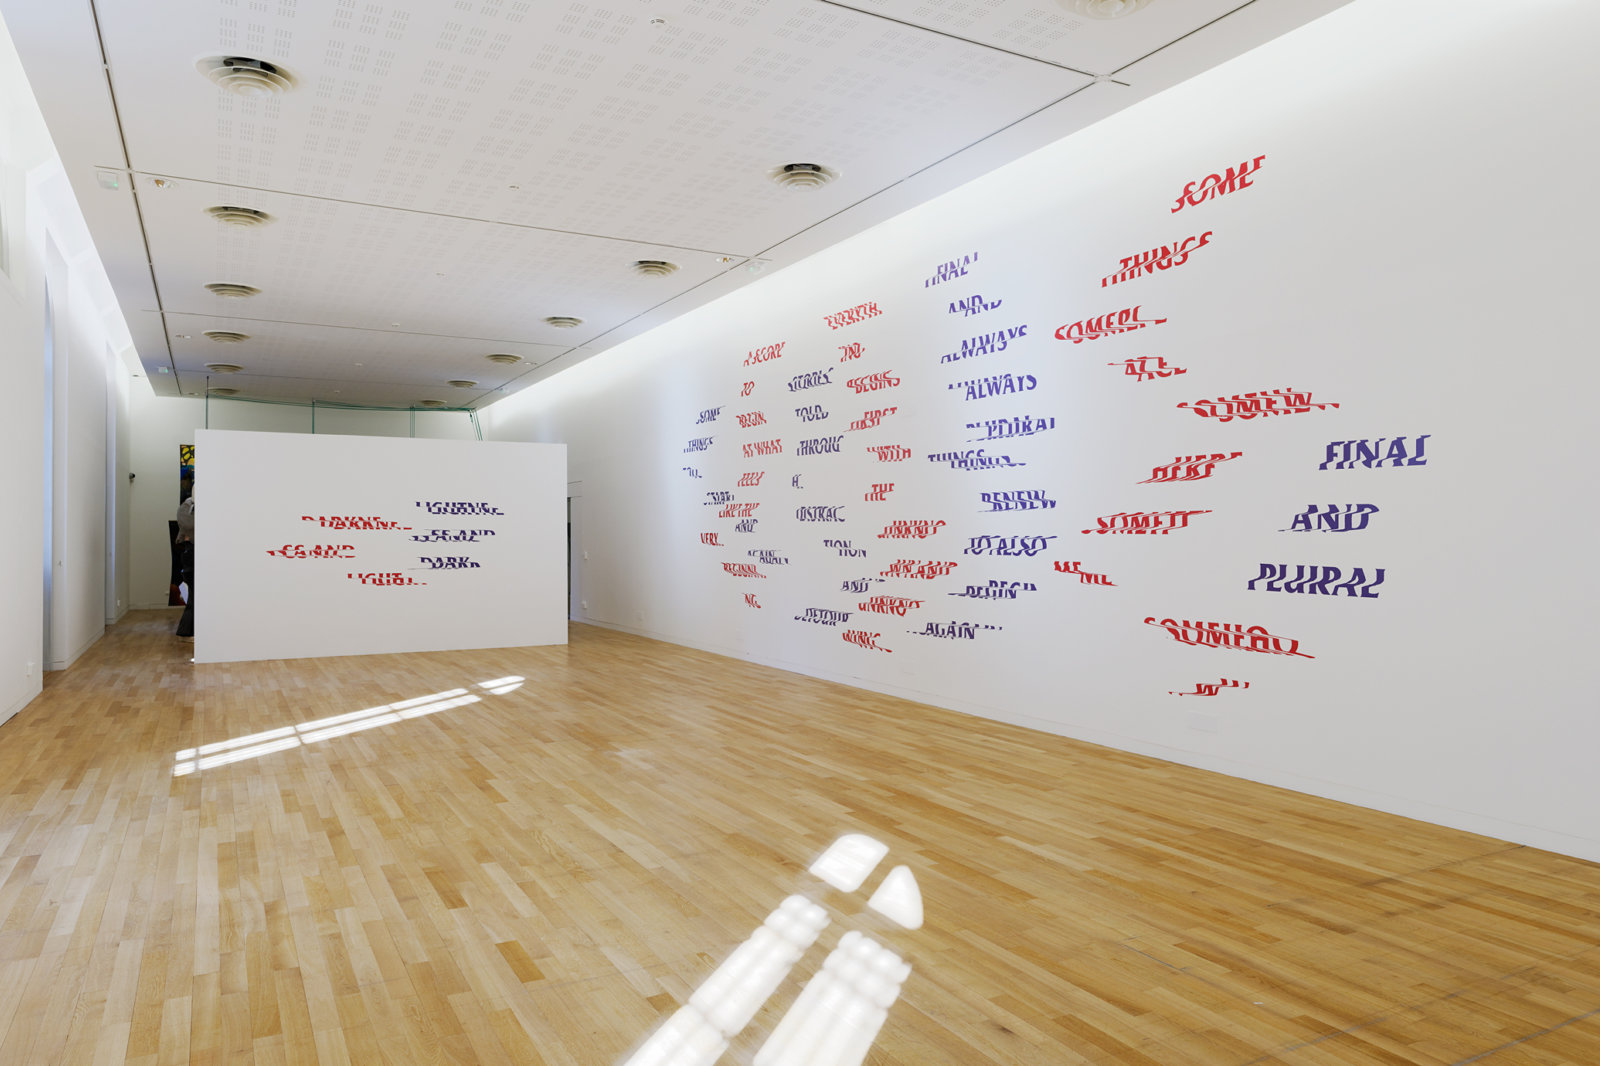 Raymond Boisjoly, Between and Beyond, 2018, vinyl lettering, dimensions variable. Installation view, À Cris Ouverts, Les Ateliers des Rennes—biennale d’art contemporain, Musée des beaux-arts de Rennes, France, 2018